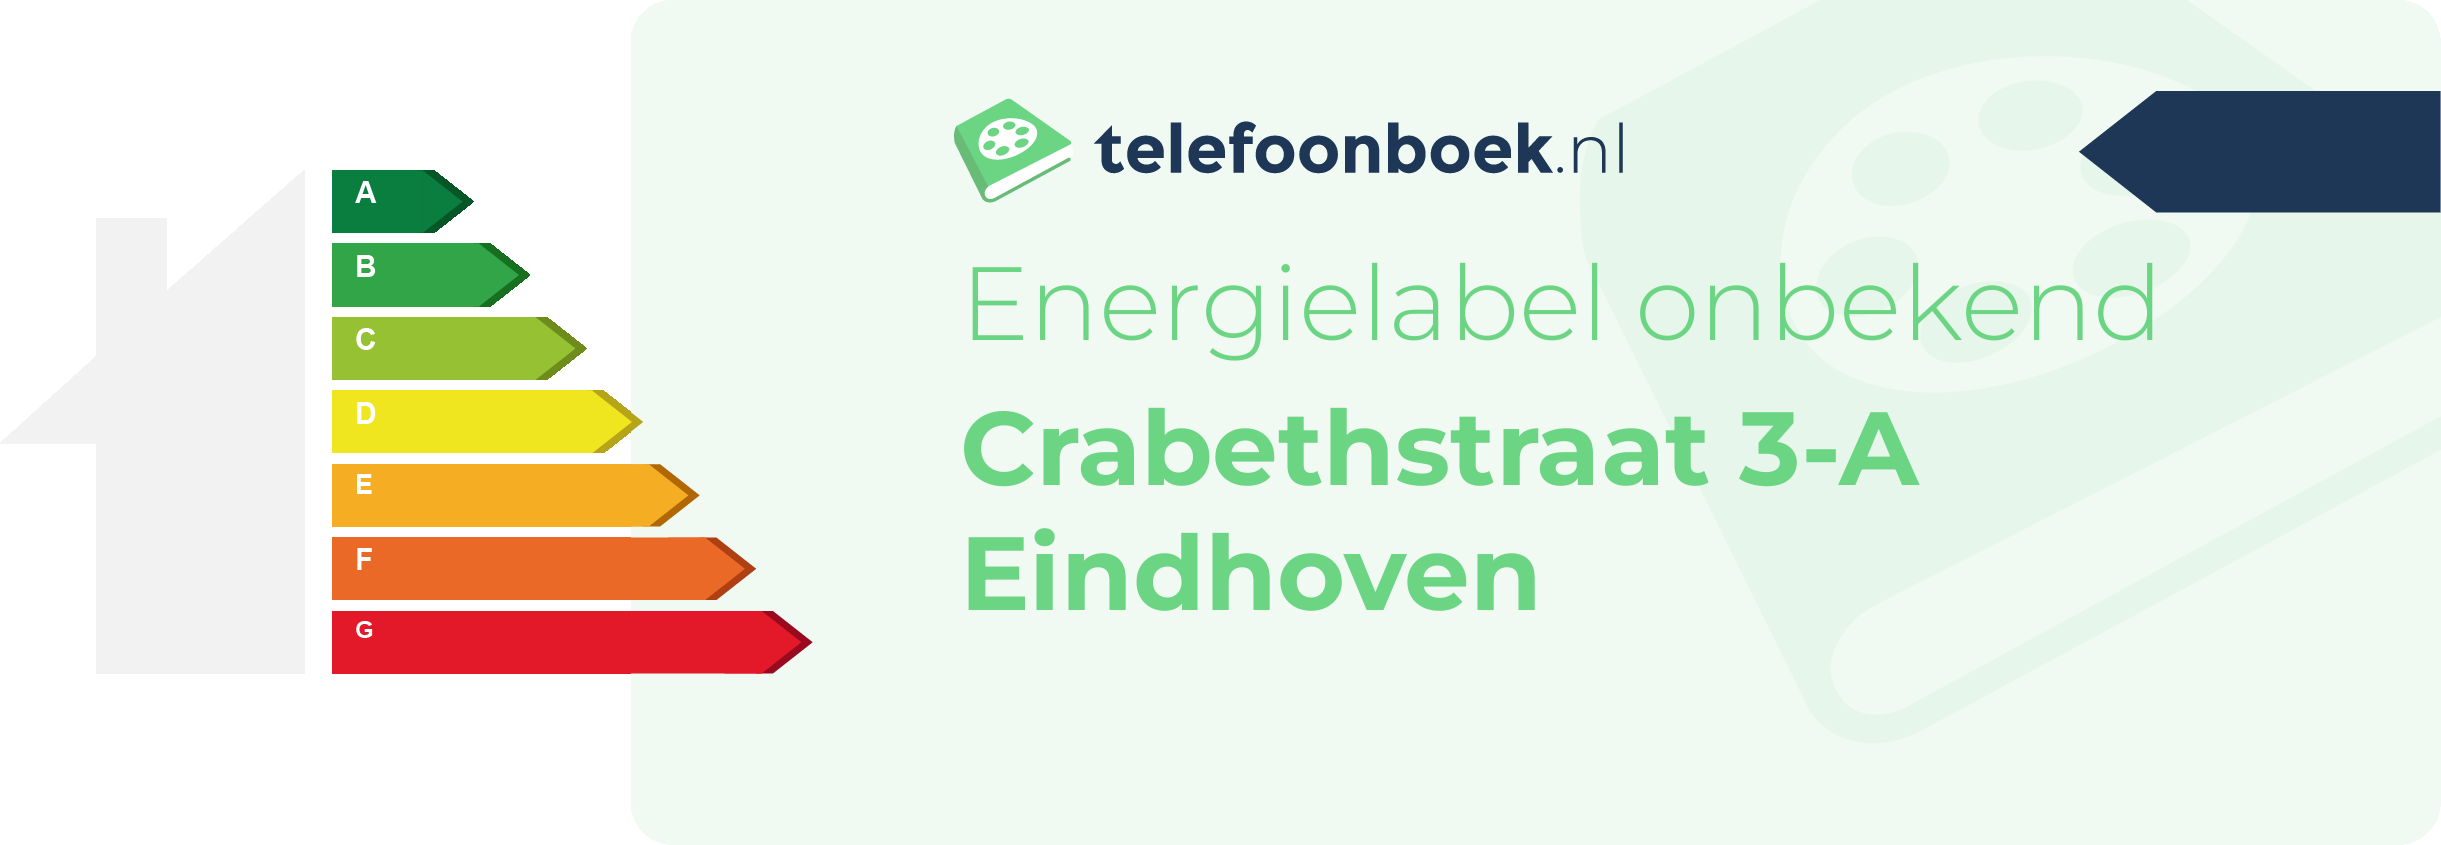 Energielabel Crabethstraat 3-A Eindhoven